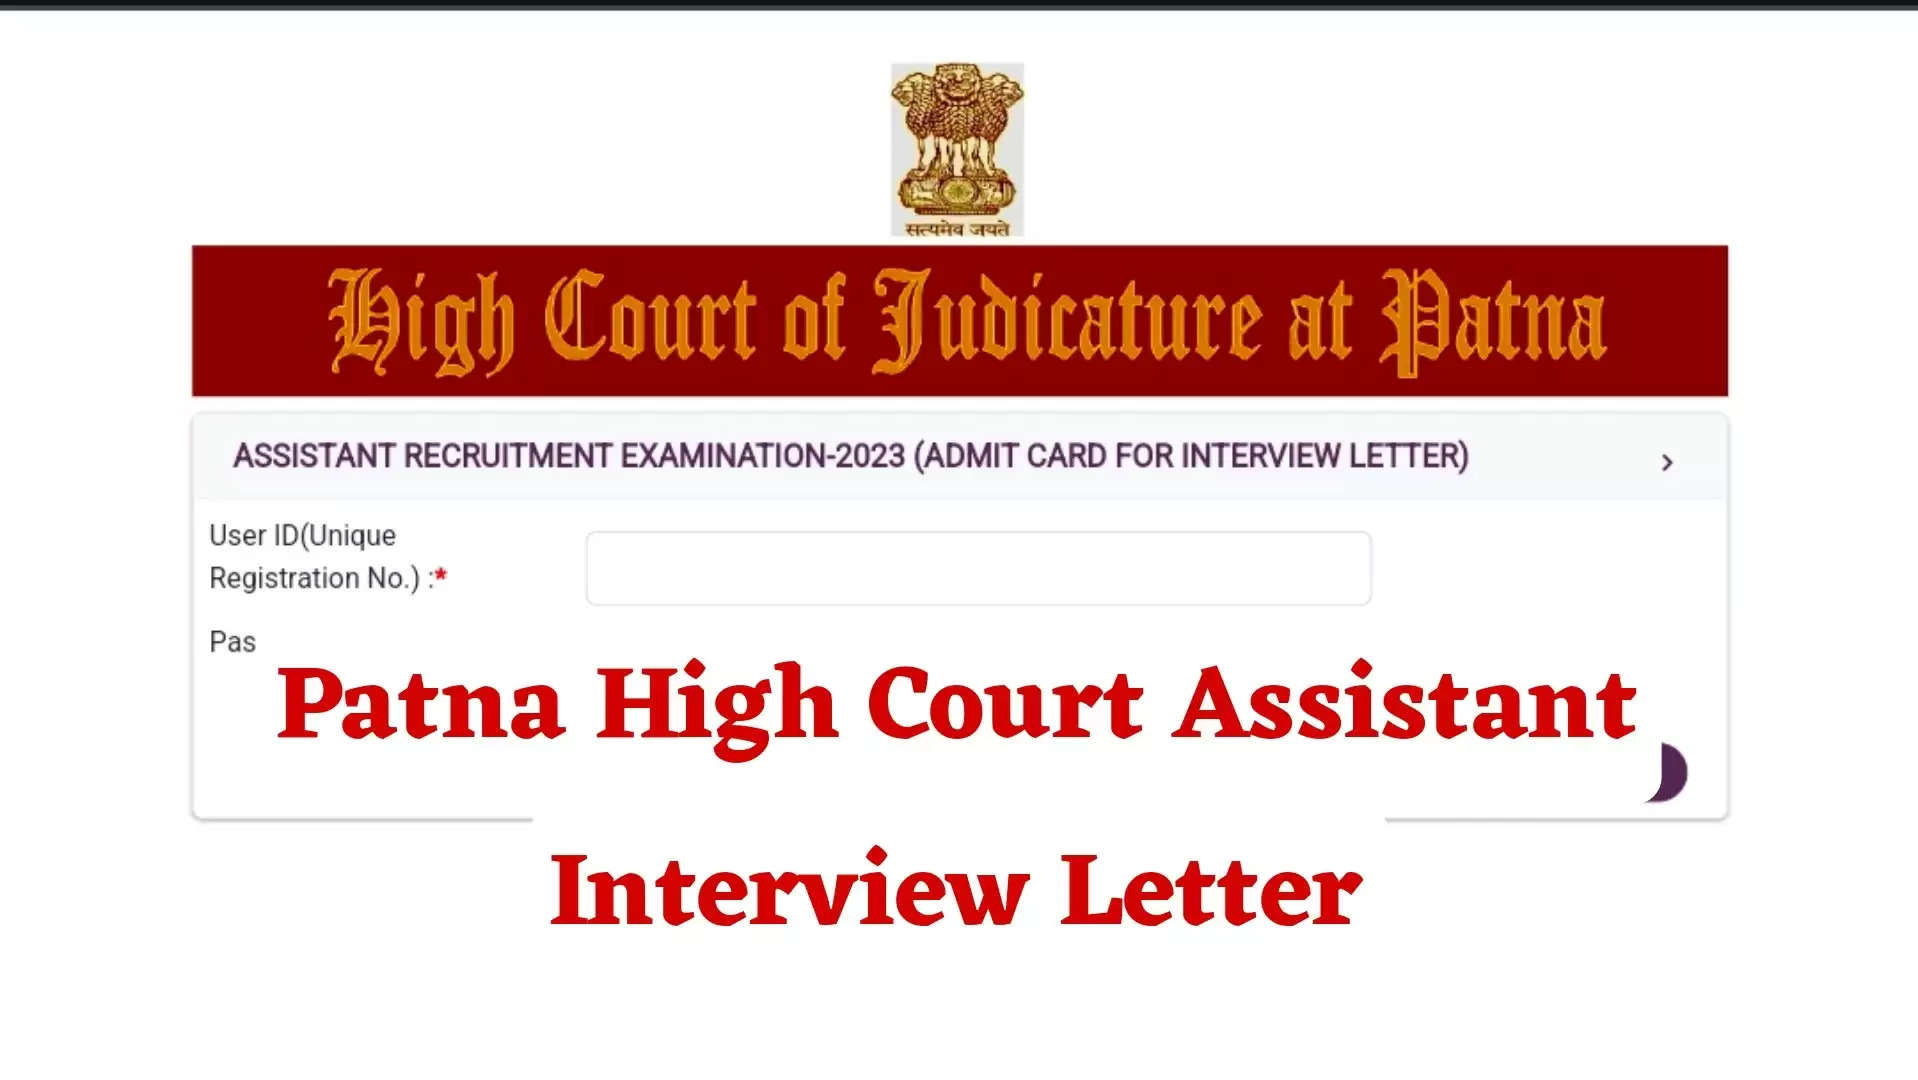 पटना उच्च न्यायालय सहायक भर्ती 2023: साक्षात्कार अनुसूची और कॉल लेटर जारी